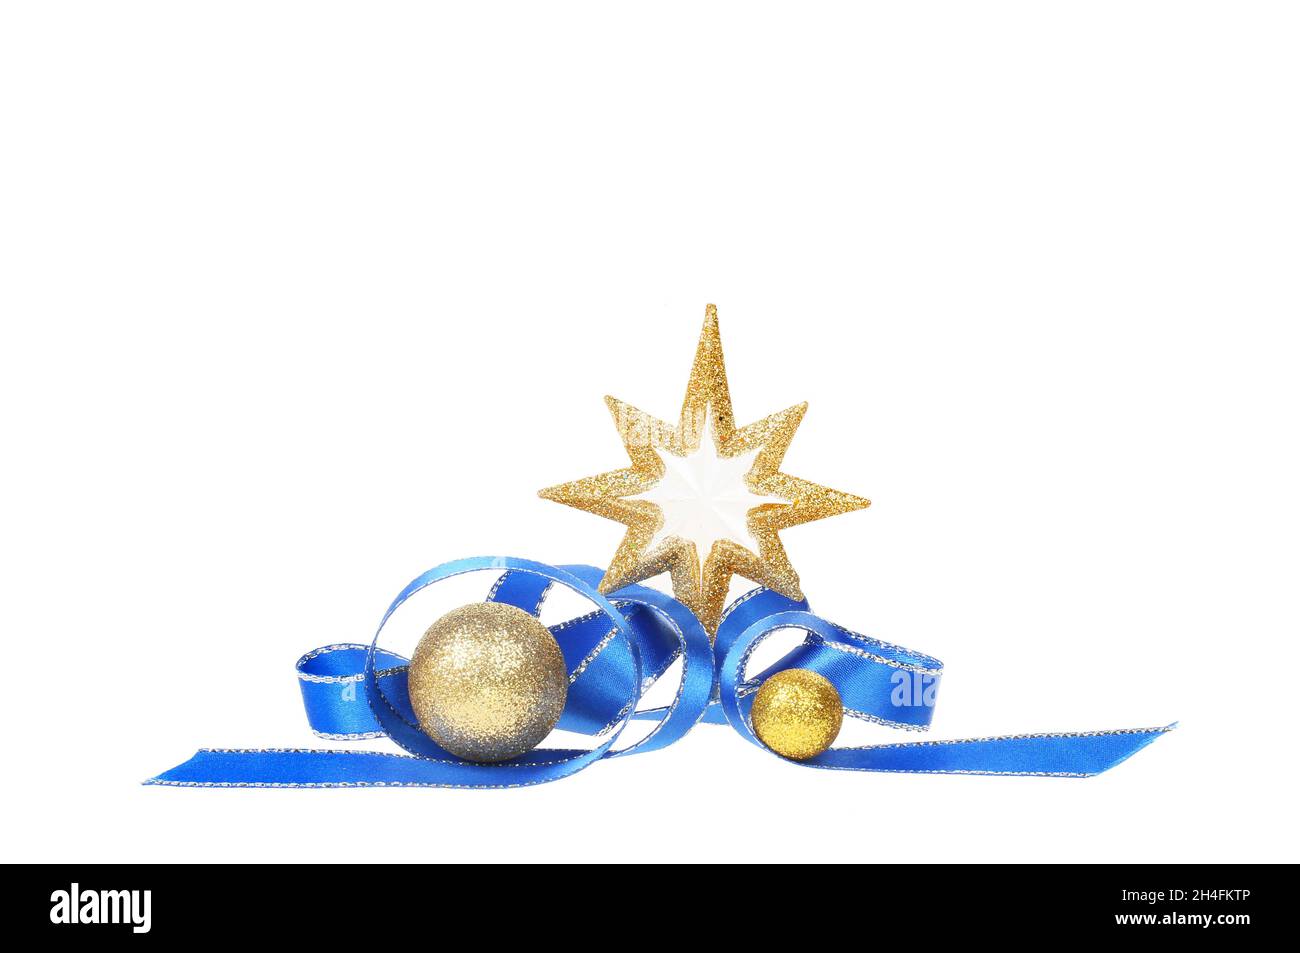 Decorazione natalizia, stella glitterata d'oro, baubles e un nastro blu, isolato contro il bianco Foto Stock